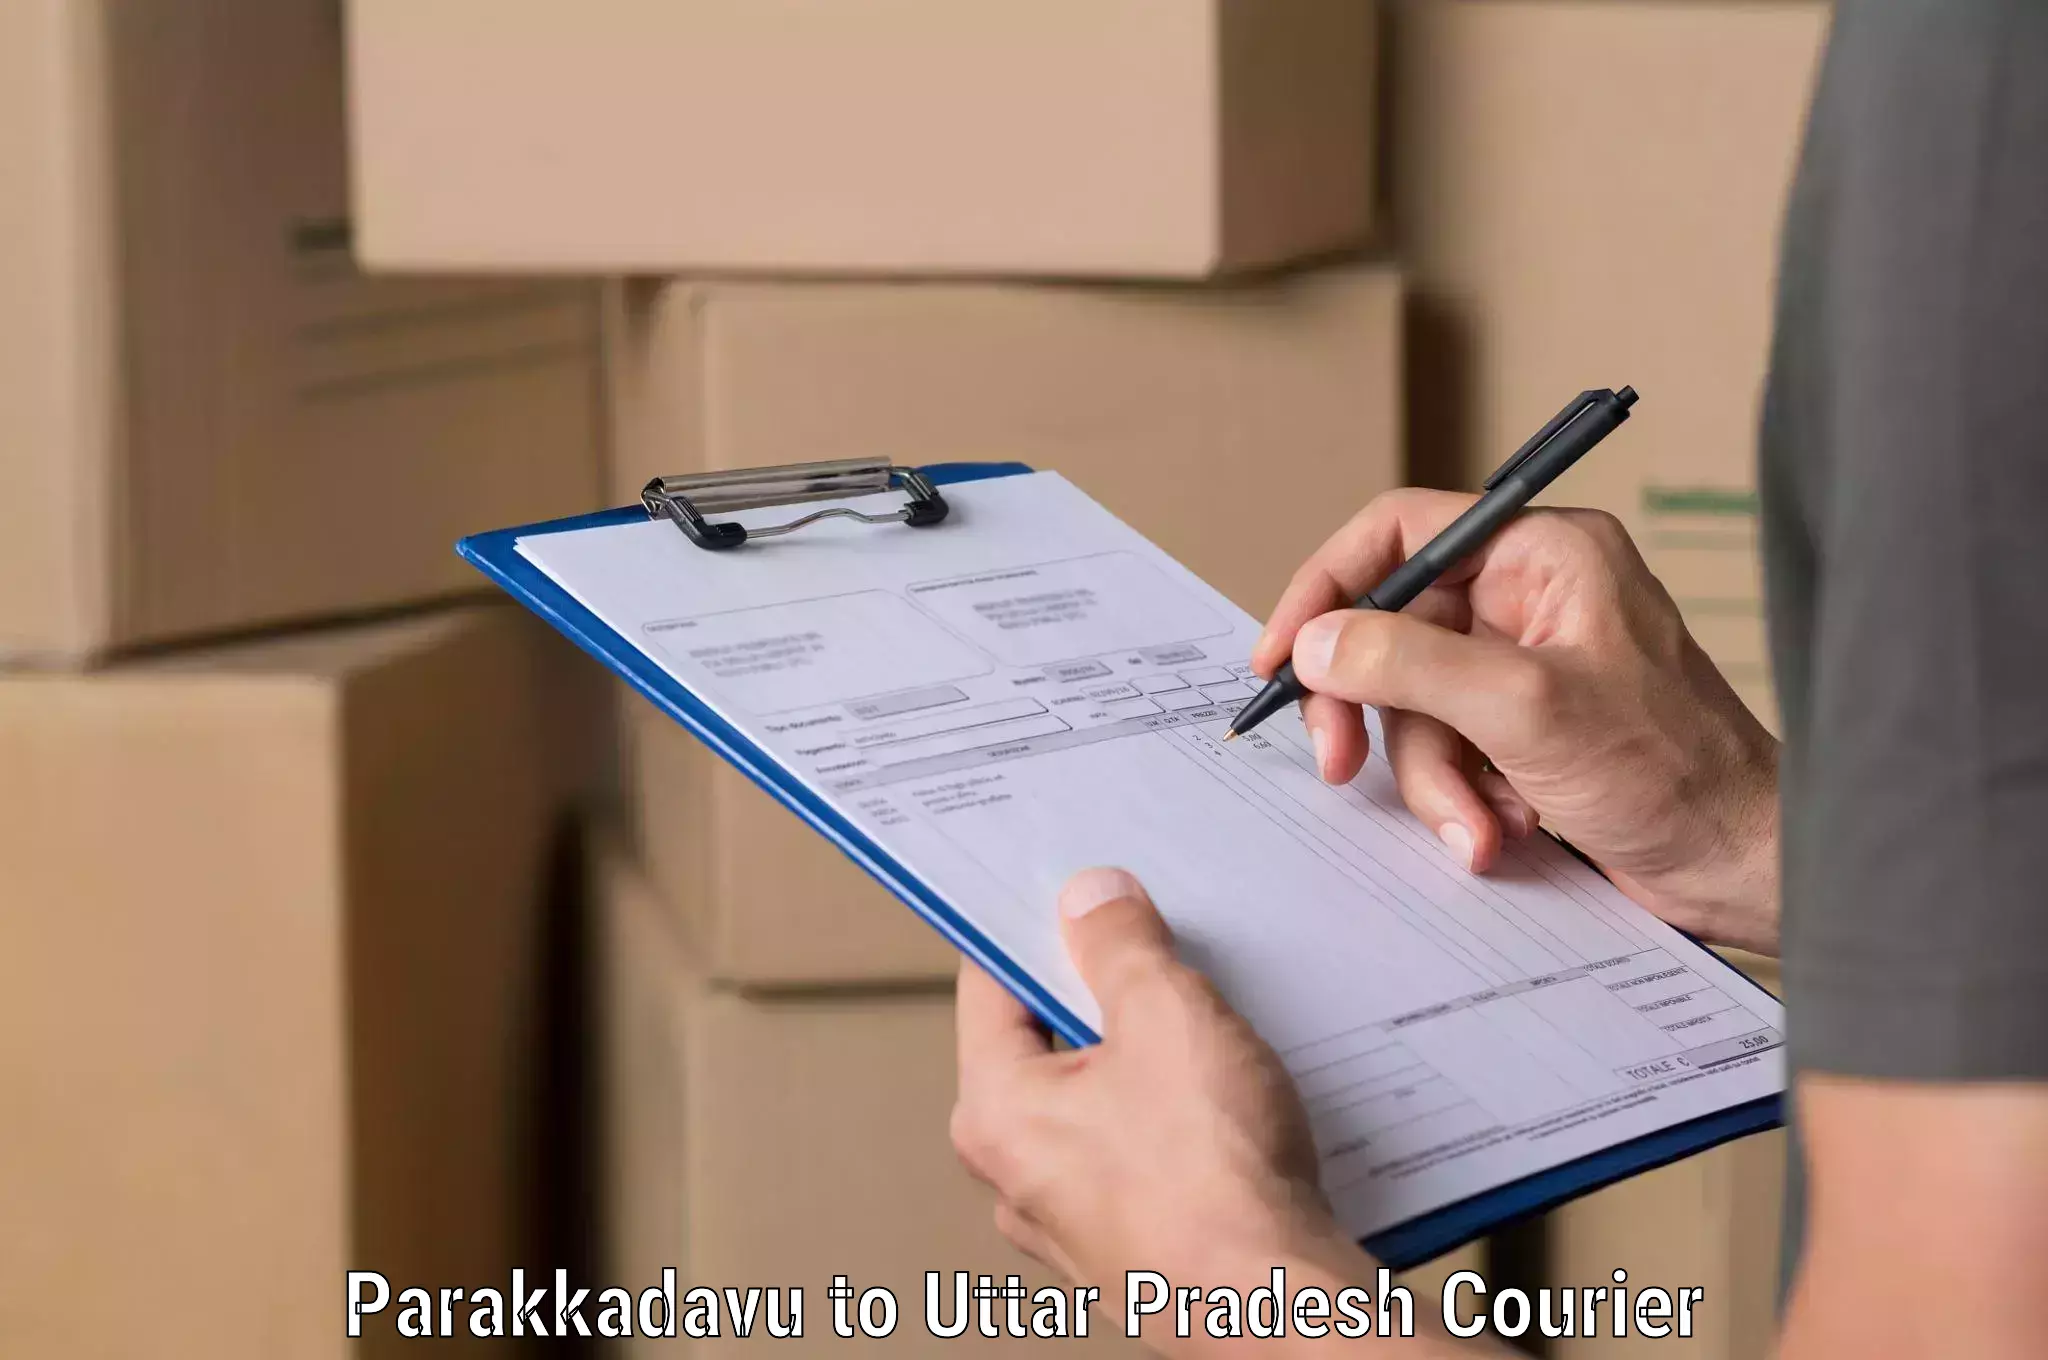 Reliable shipping solutions Parakkadavu to Uttar Pradesh